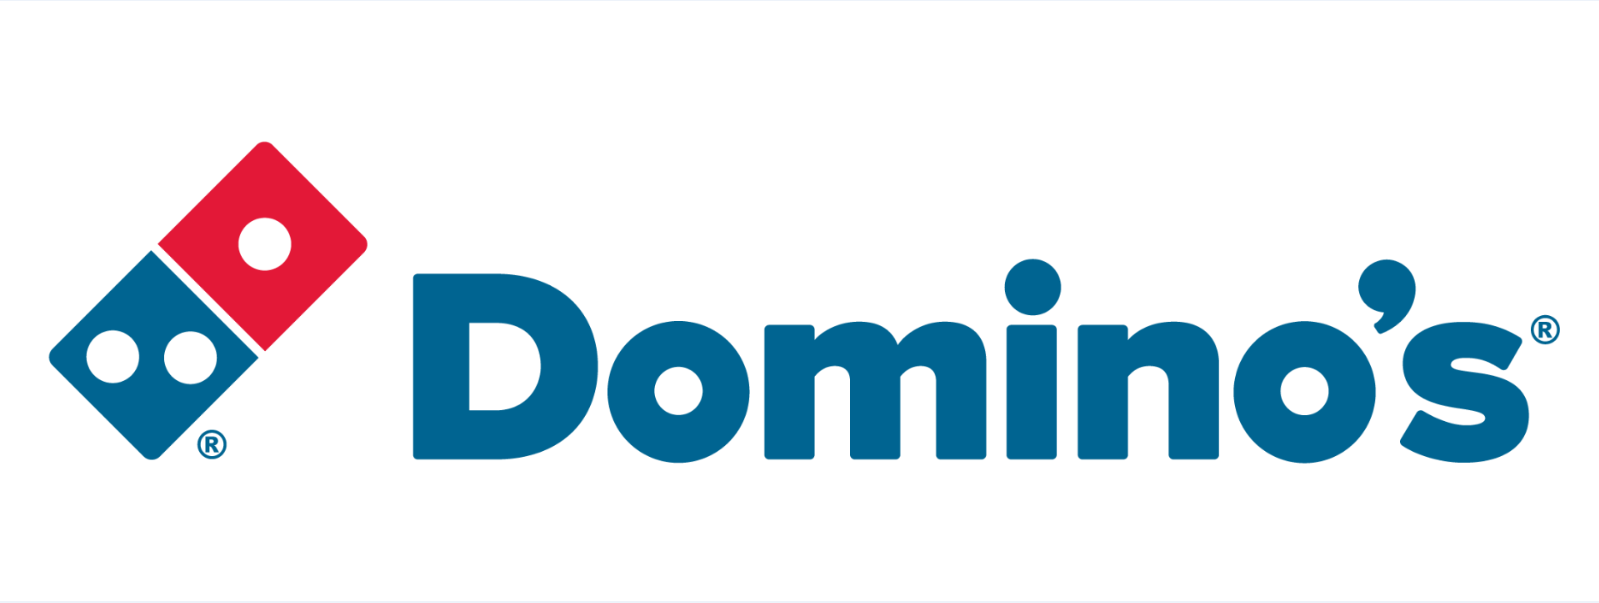 Dominos-002